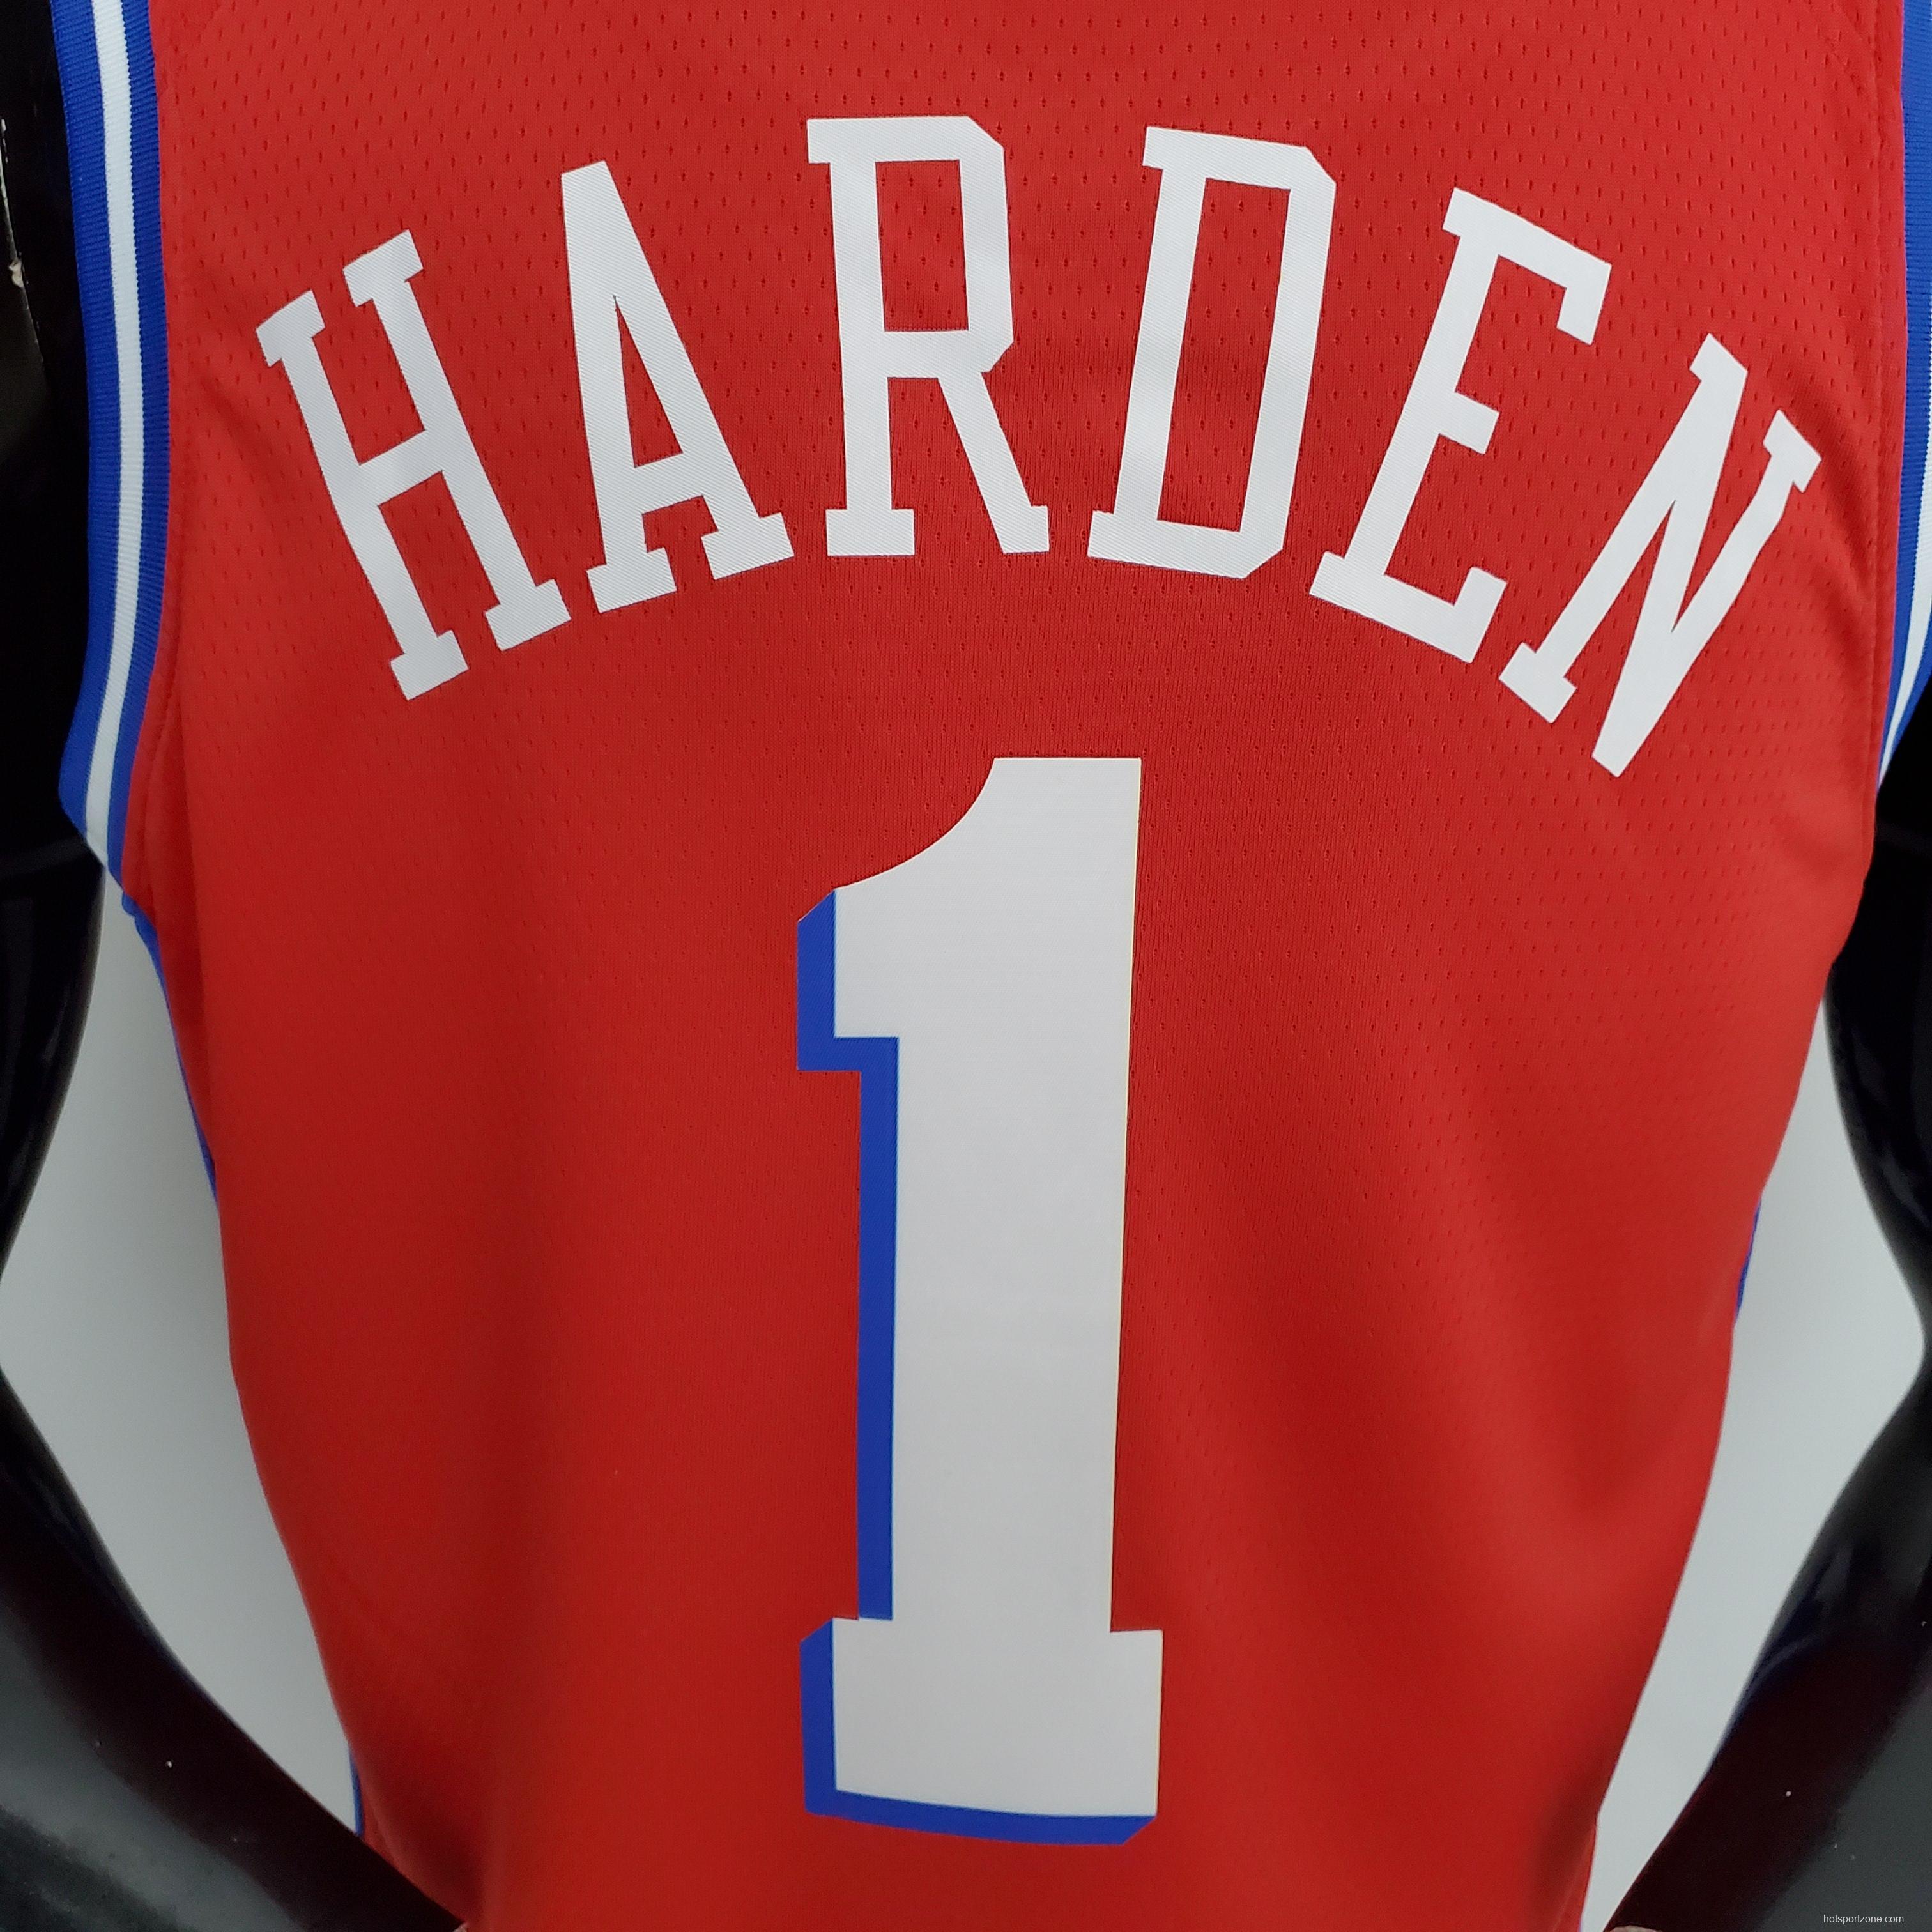 NBA 76ers Harden #1 V-Neck Red